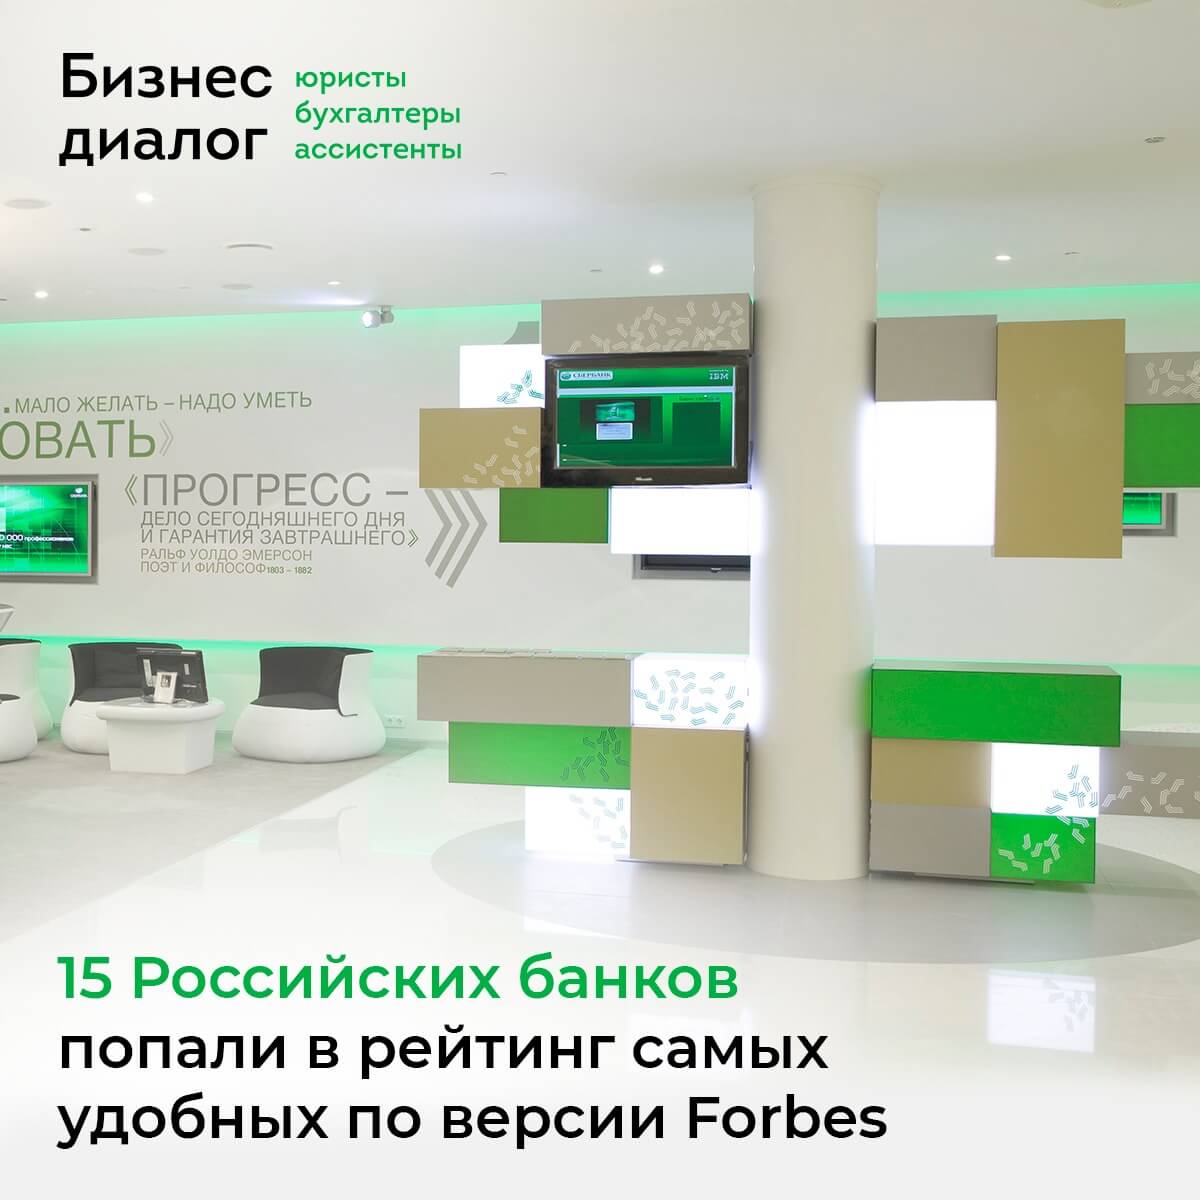 15 российских банков попали в рейтинг самых удобных по версии Forbes